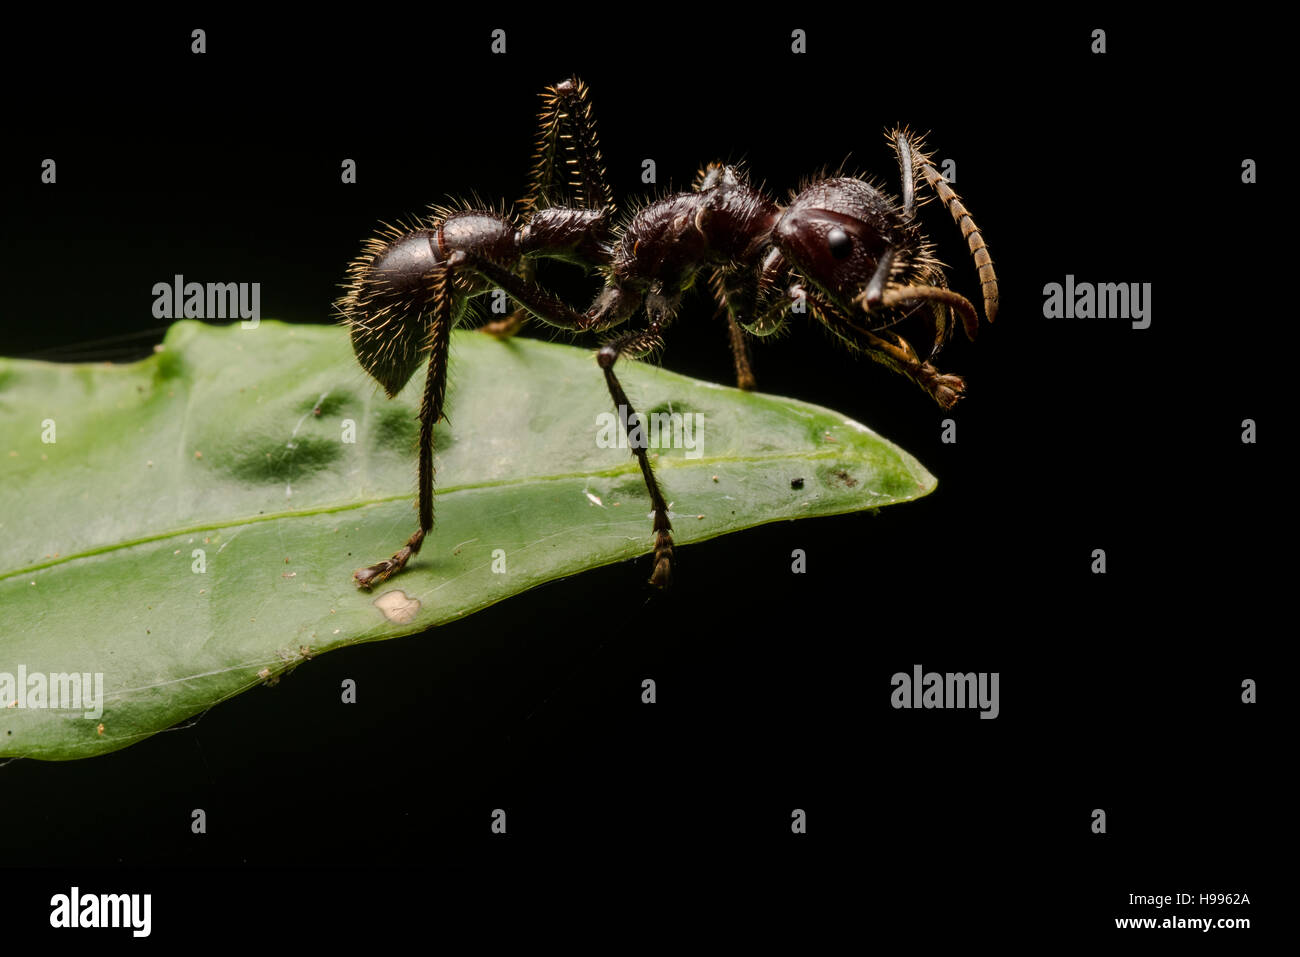 Eine Kugel Ameise (Paraponeragroße Clavata), bekannt dafür, dass den schmerzhaftesten Stich von allen Insekten. Stockfoto